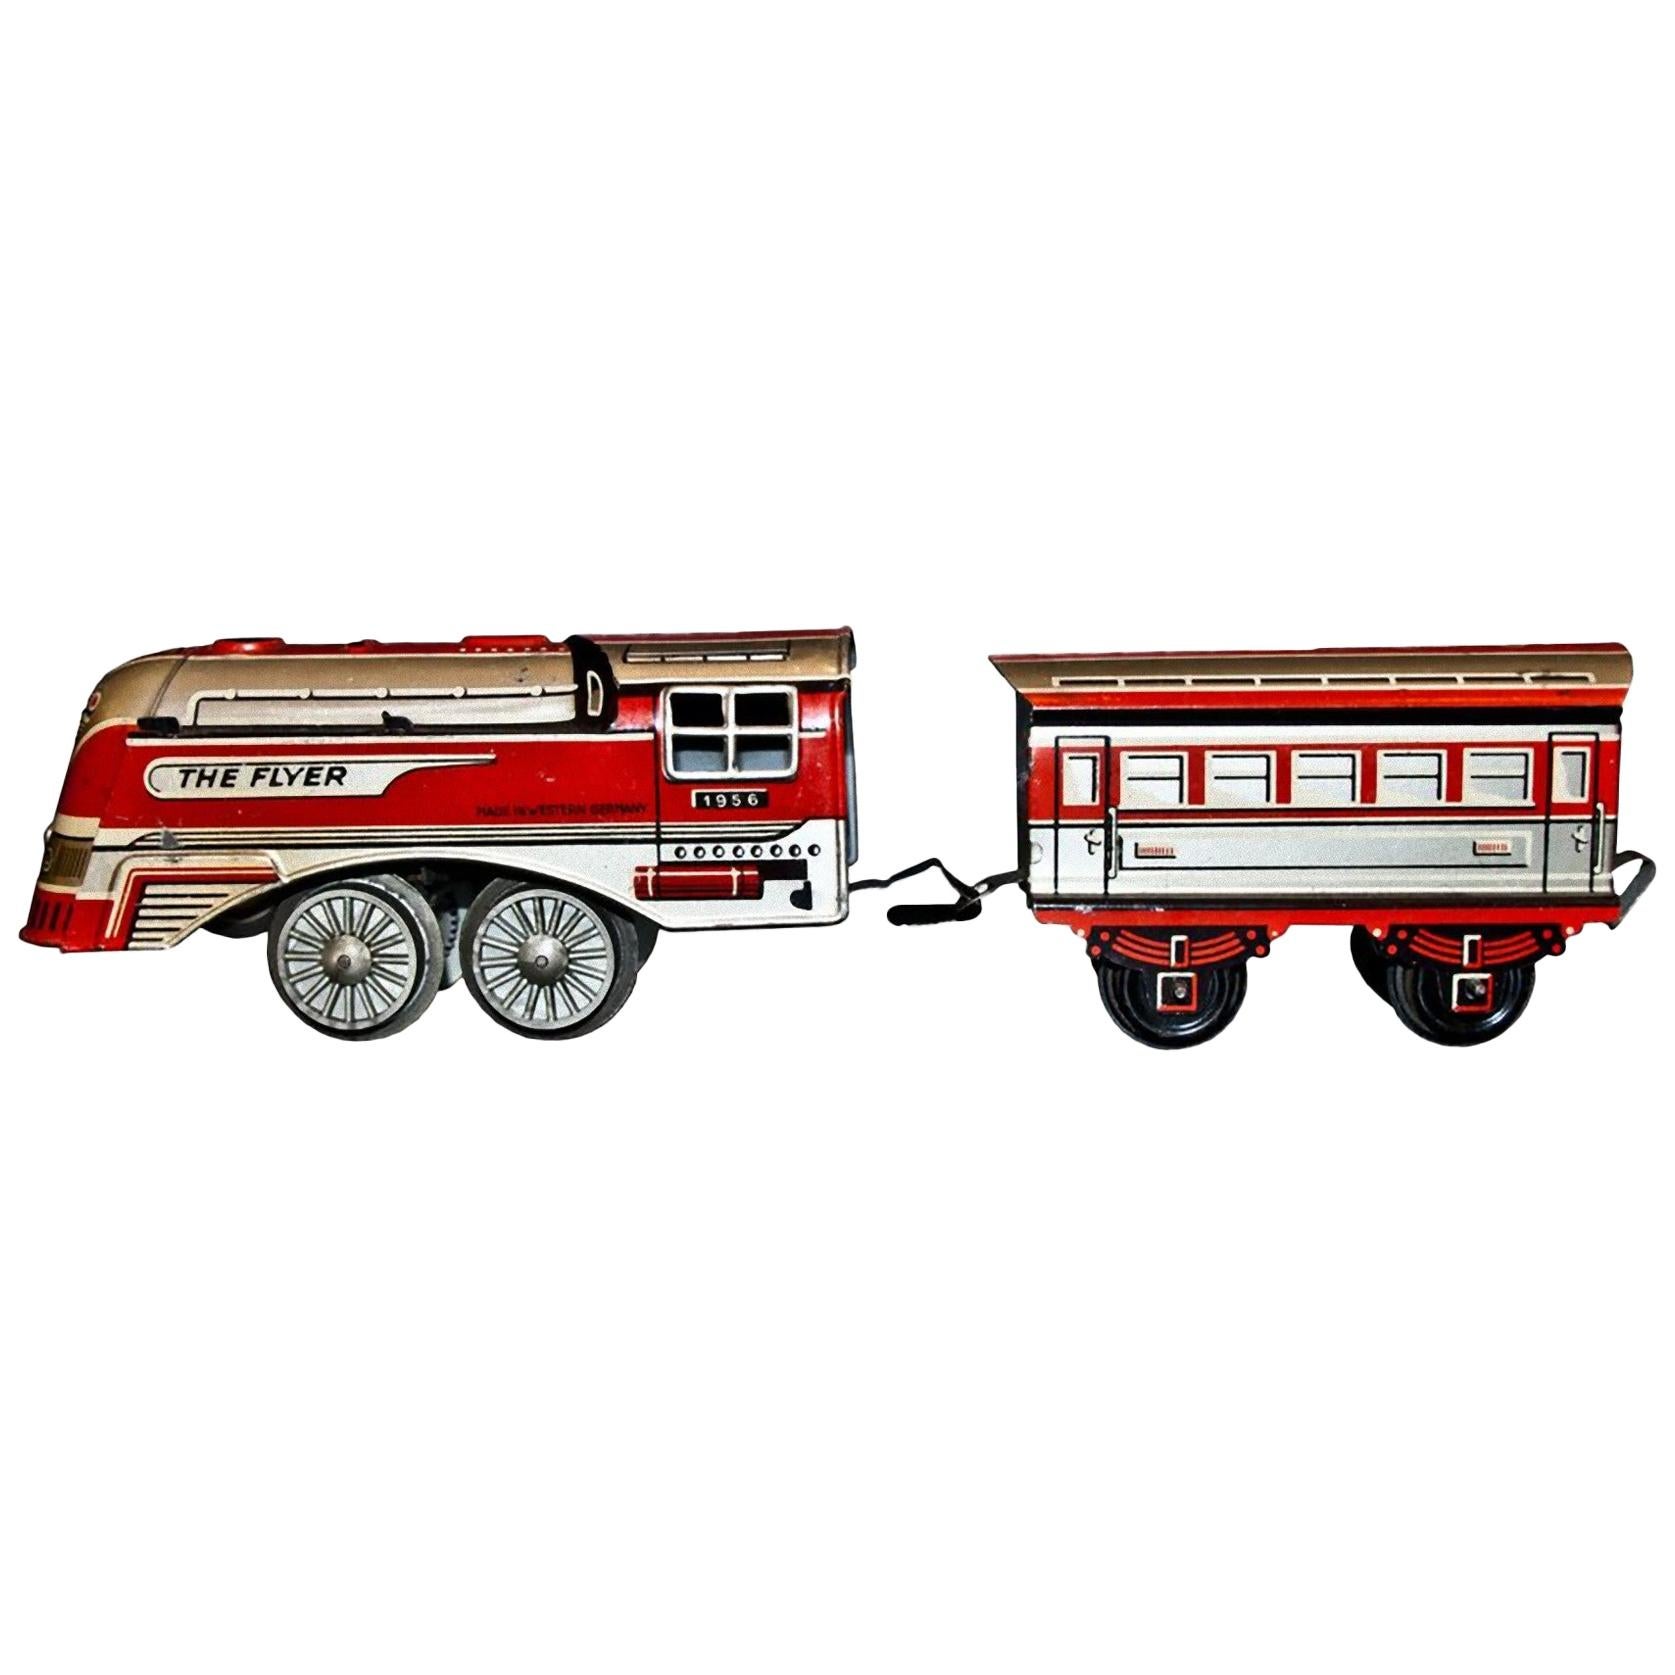 Vieux Jouet:: The Flyer 1956 Locomotive et Coach:: 1956